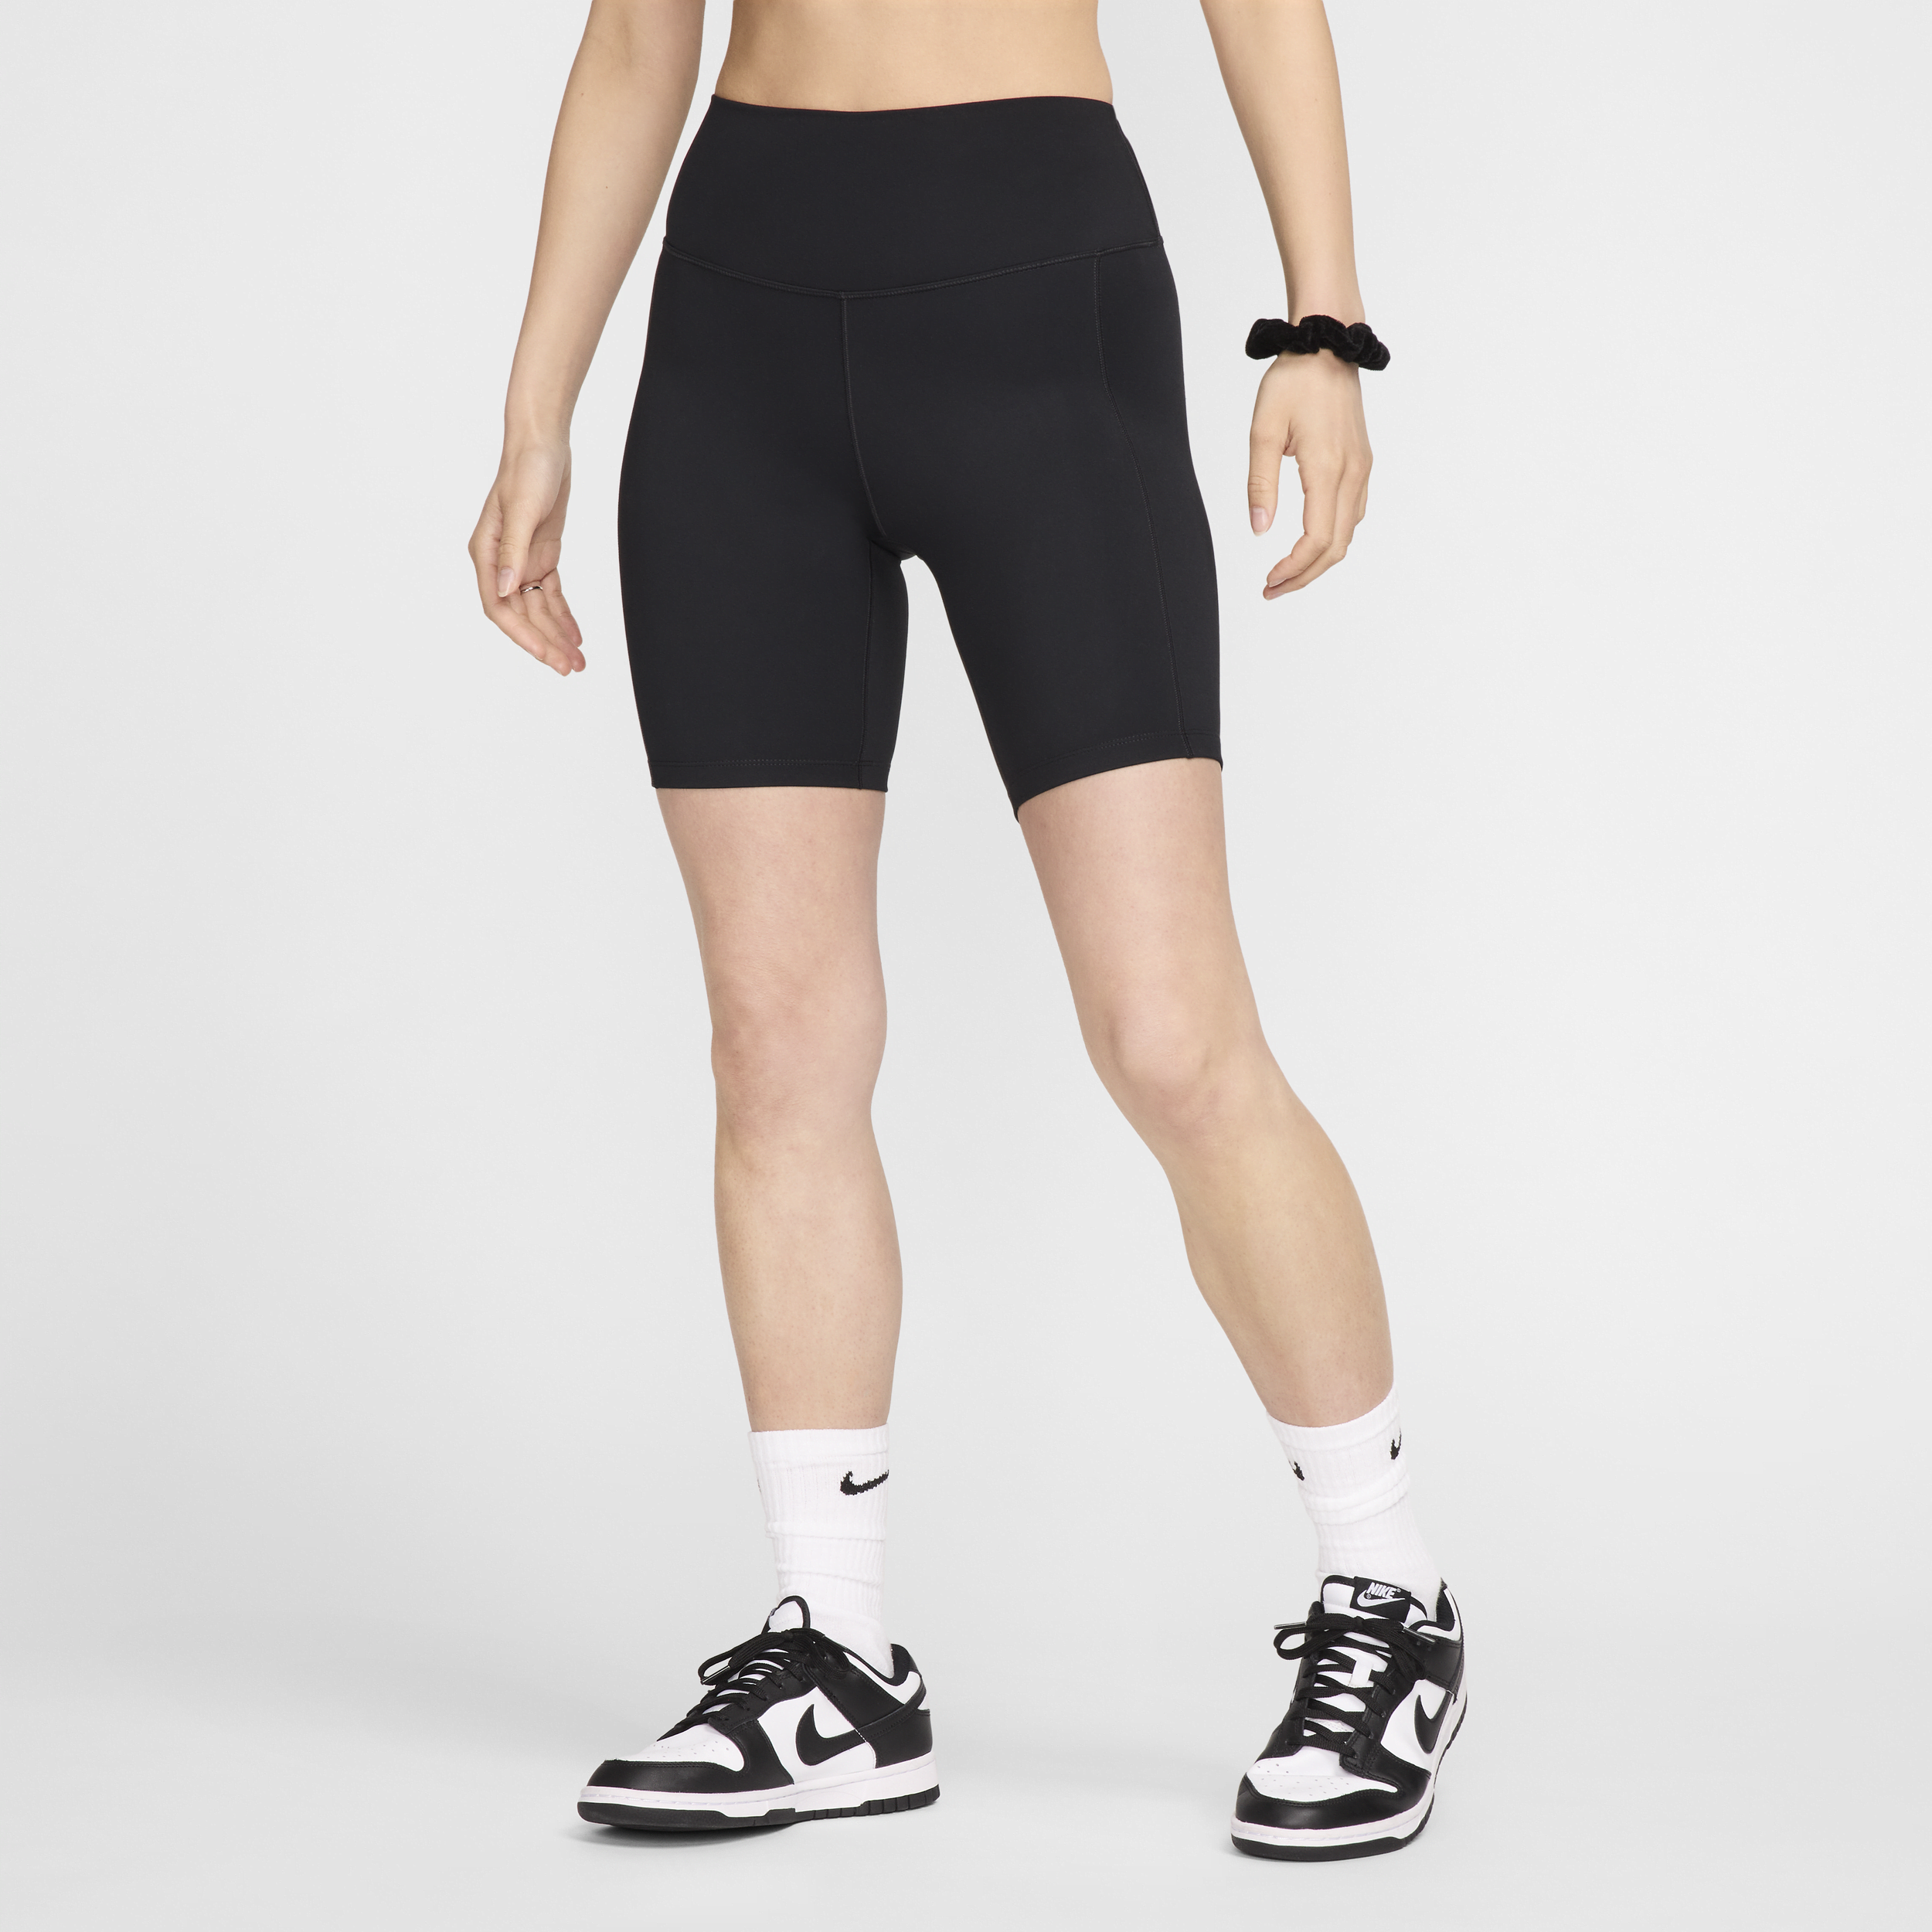 Nike One Leak Protection: Menstruationscykelshorts (20 cm) med høj talje til kvinder - sort